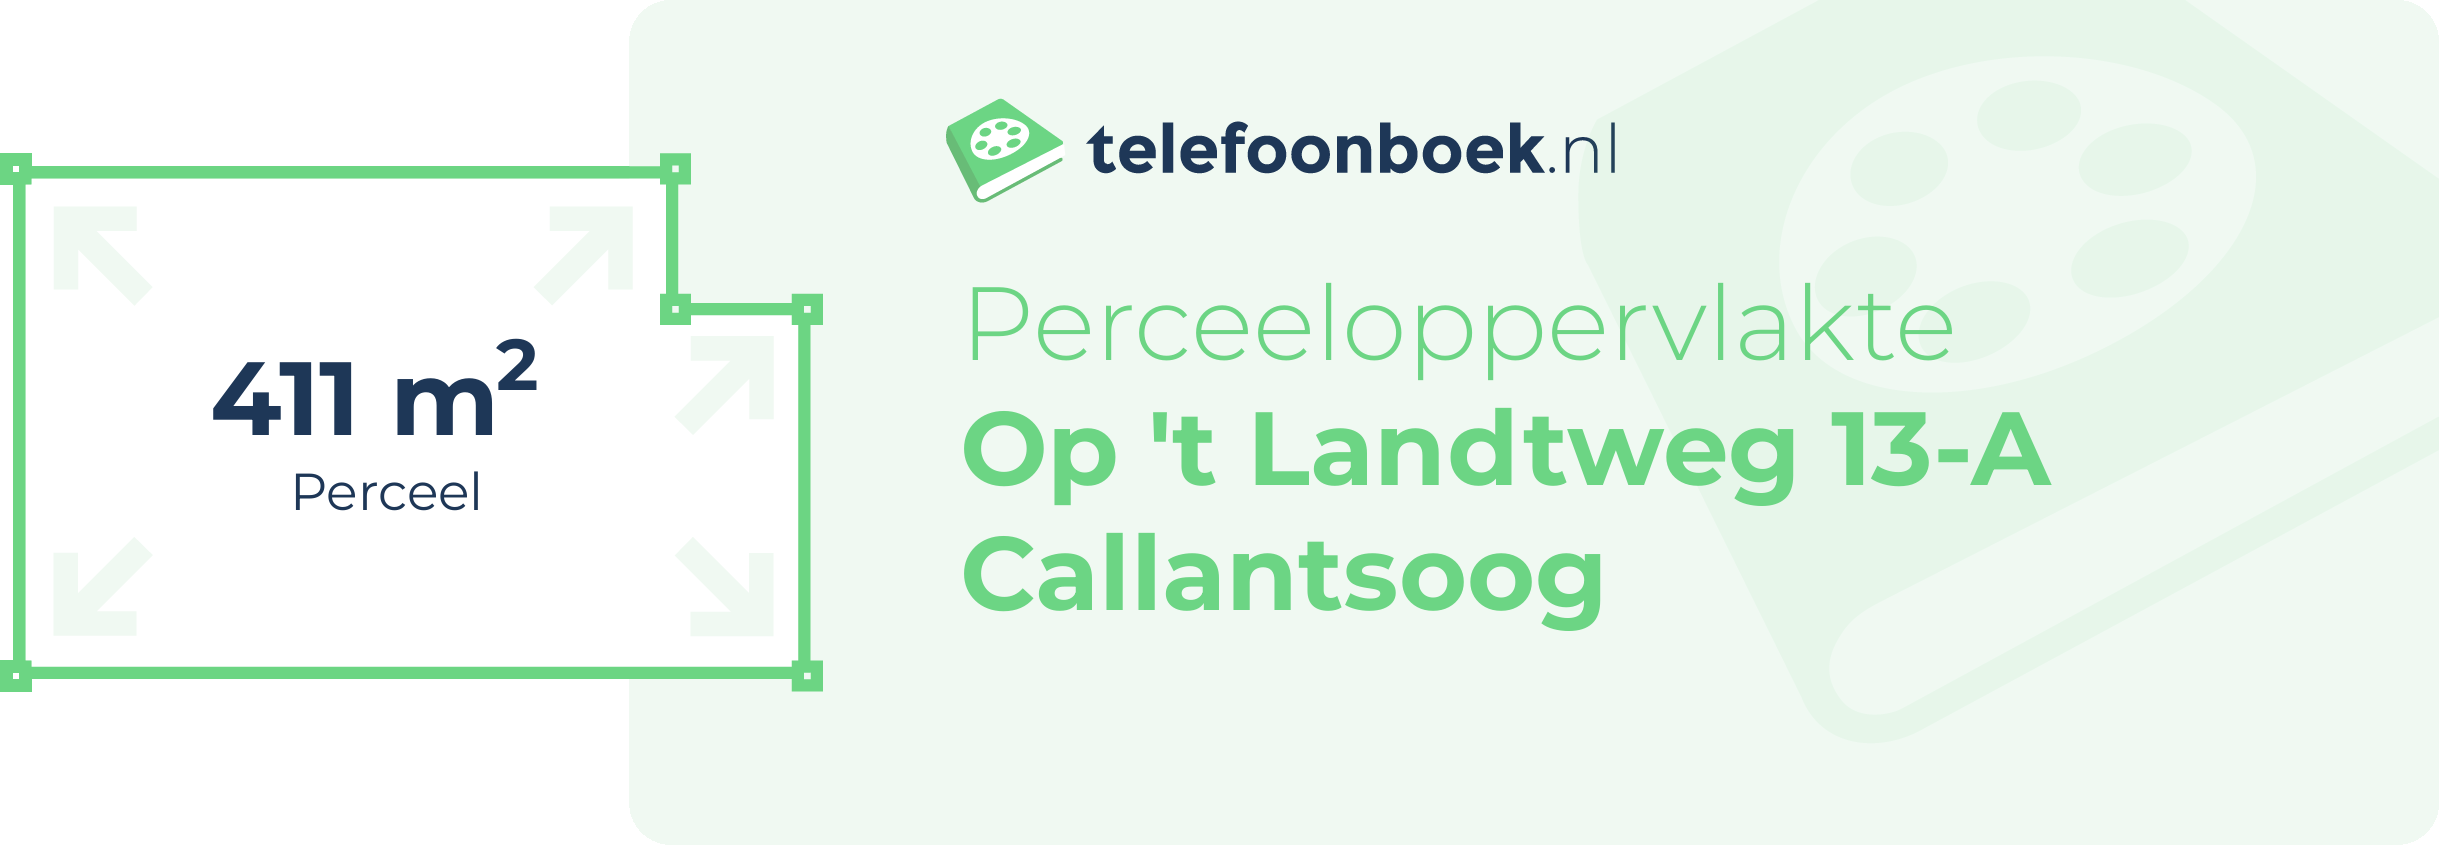 Perceeloppervlakte Op 't Landtweg 13-A Callantsoog